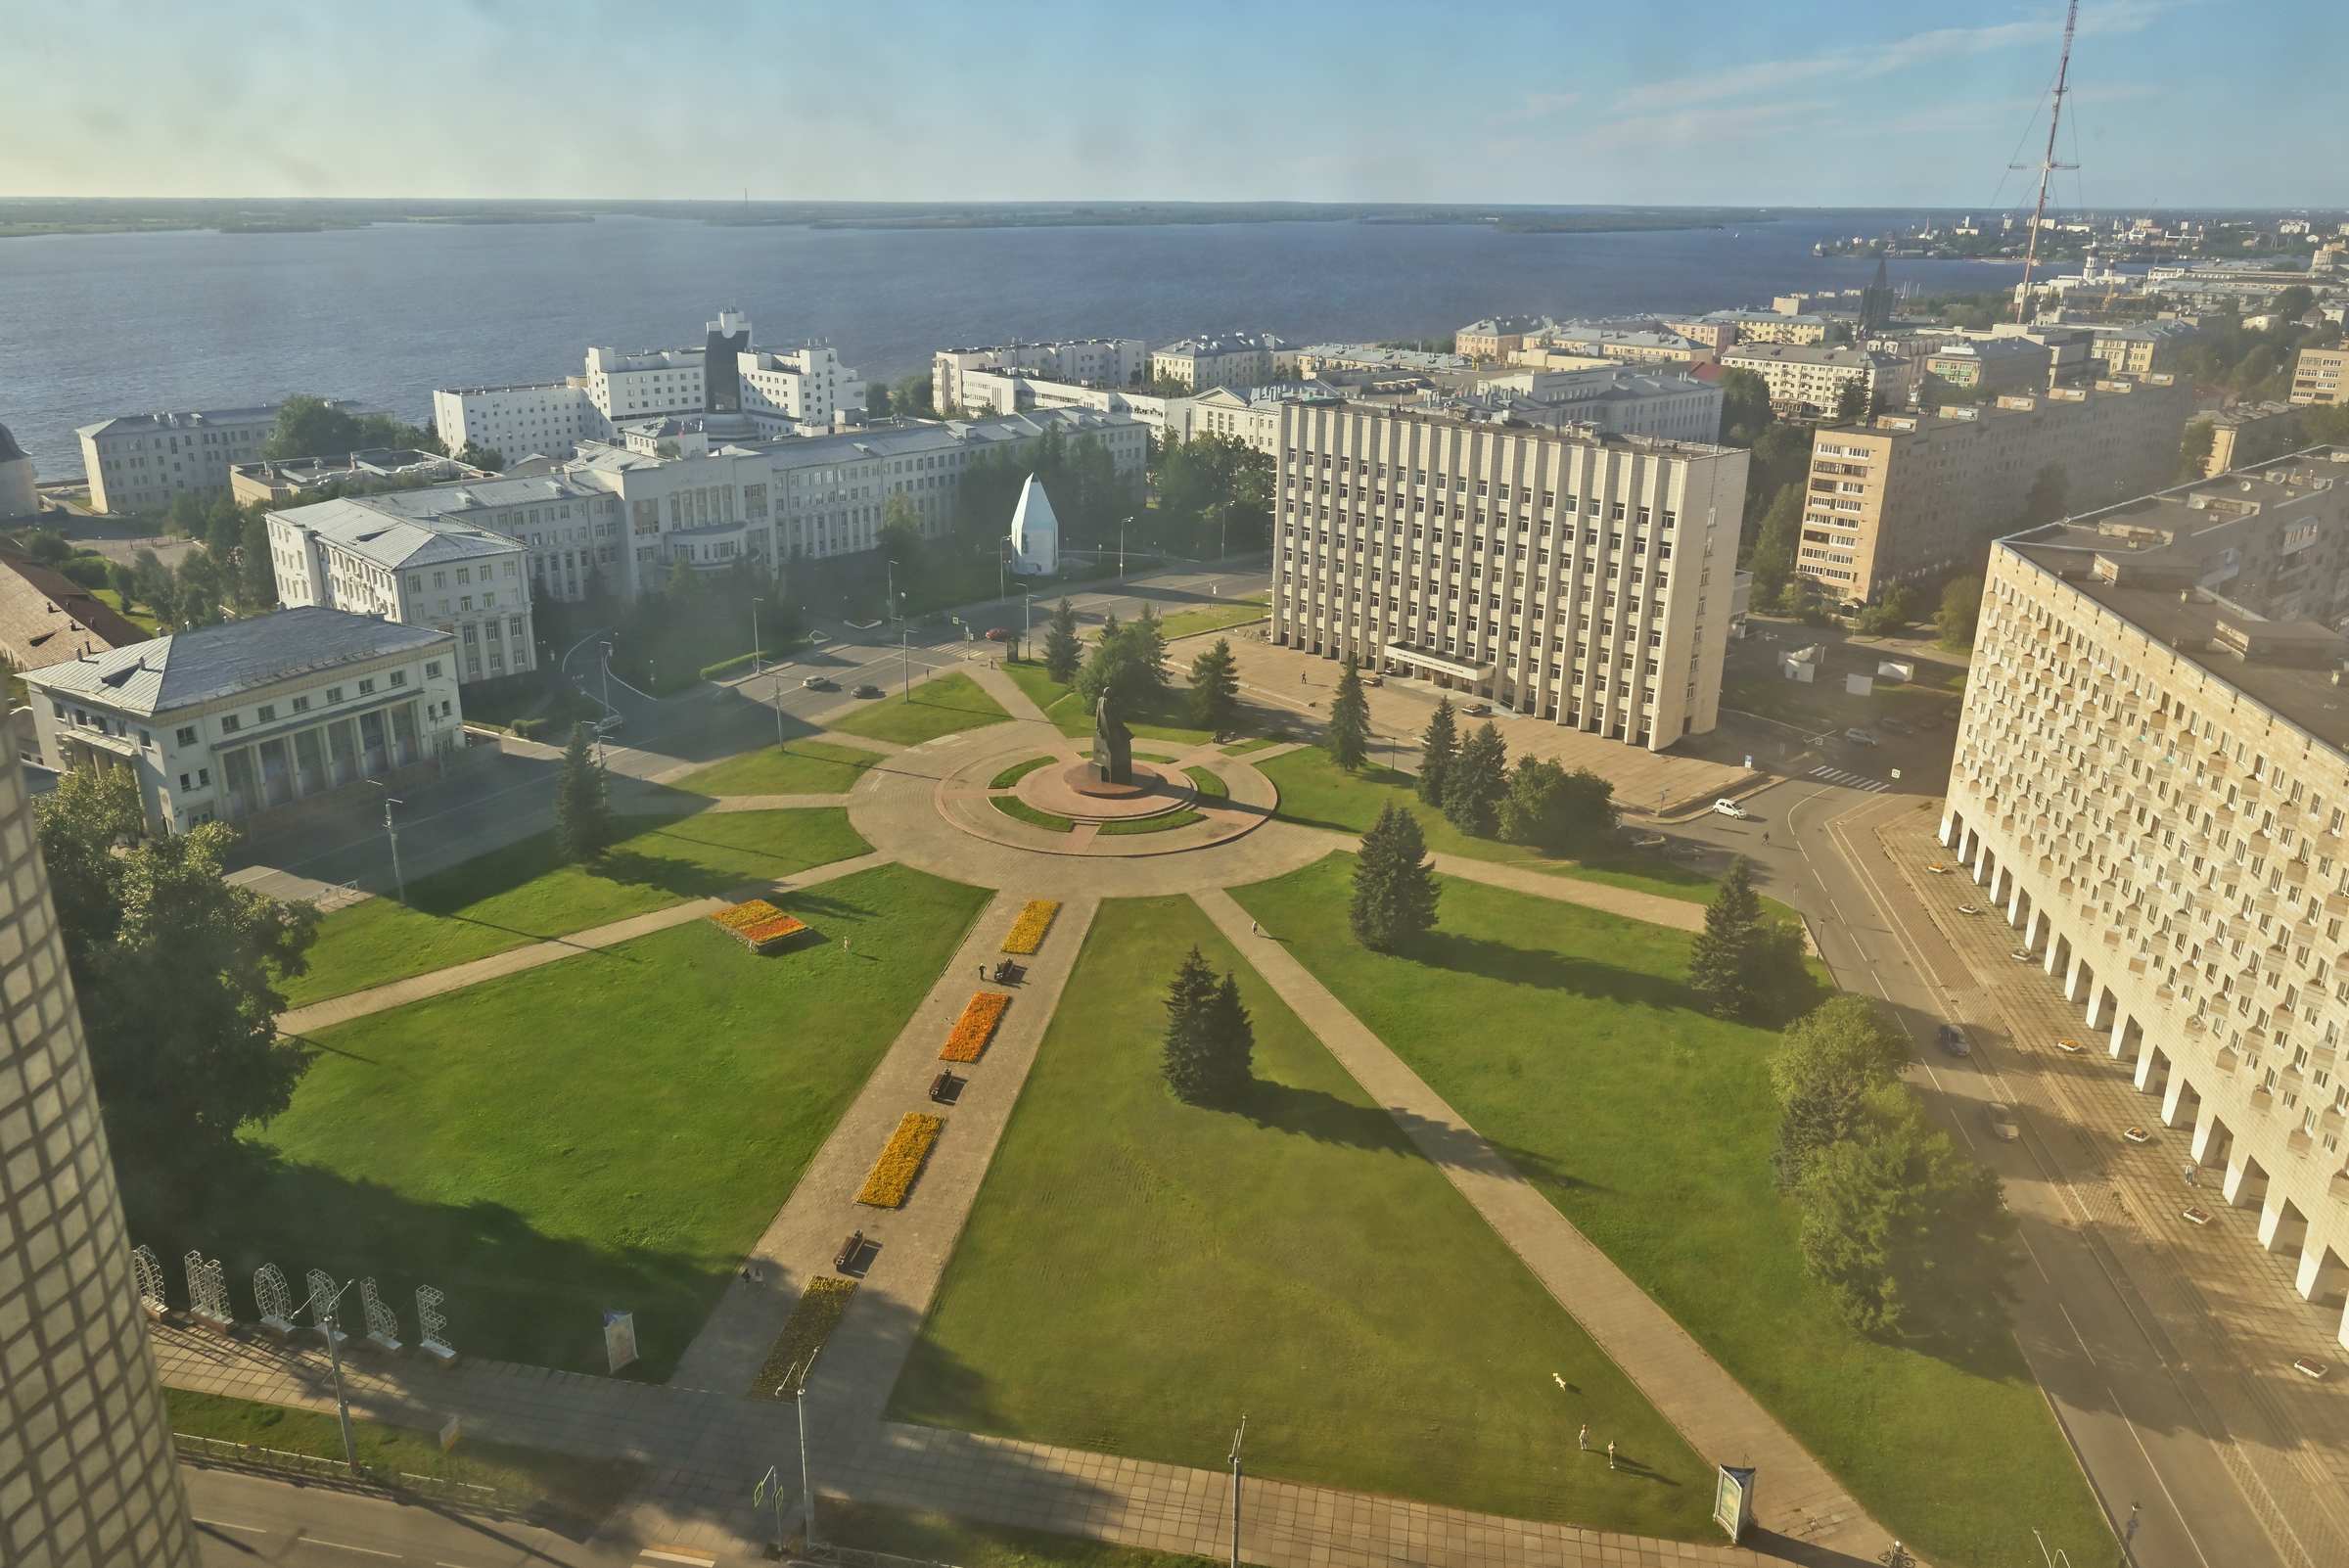 Вид на Архангельск с последних этажей высотки.